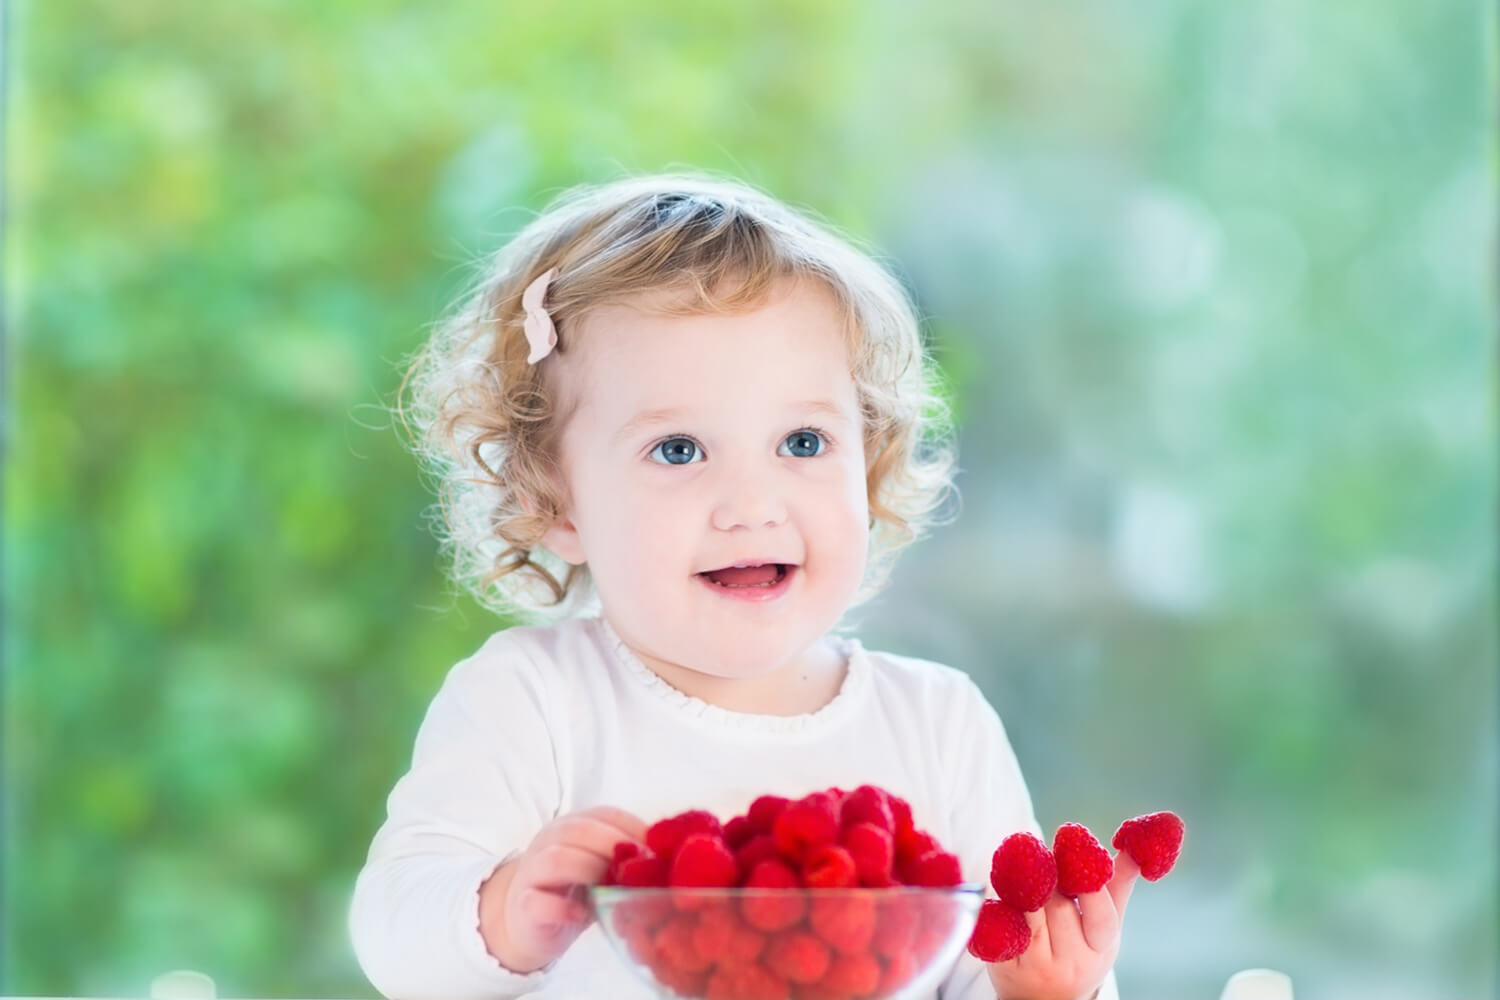 Benefits of Raspberries For Babies